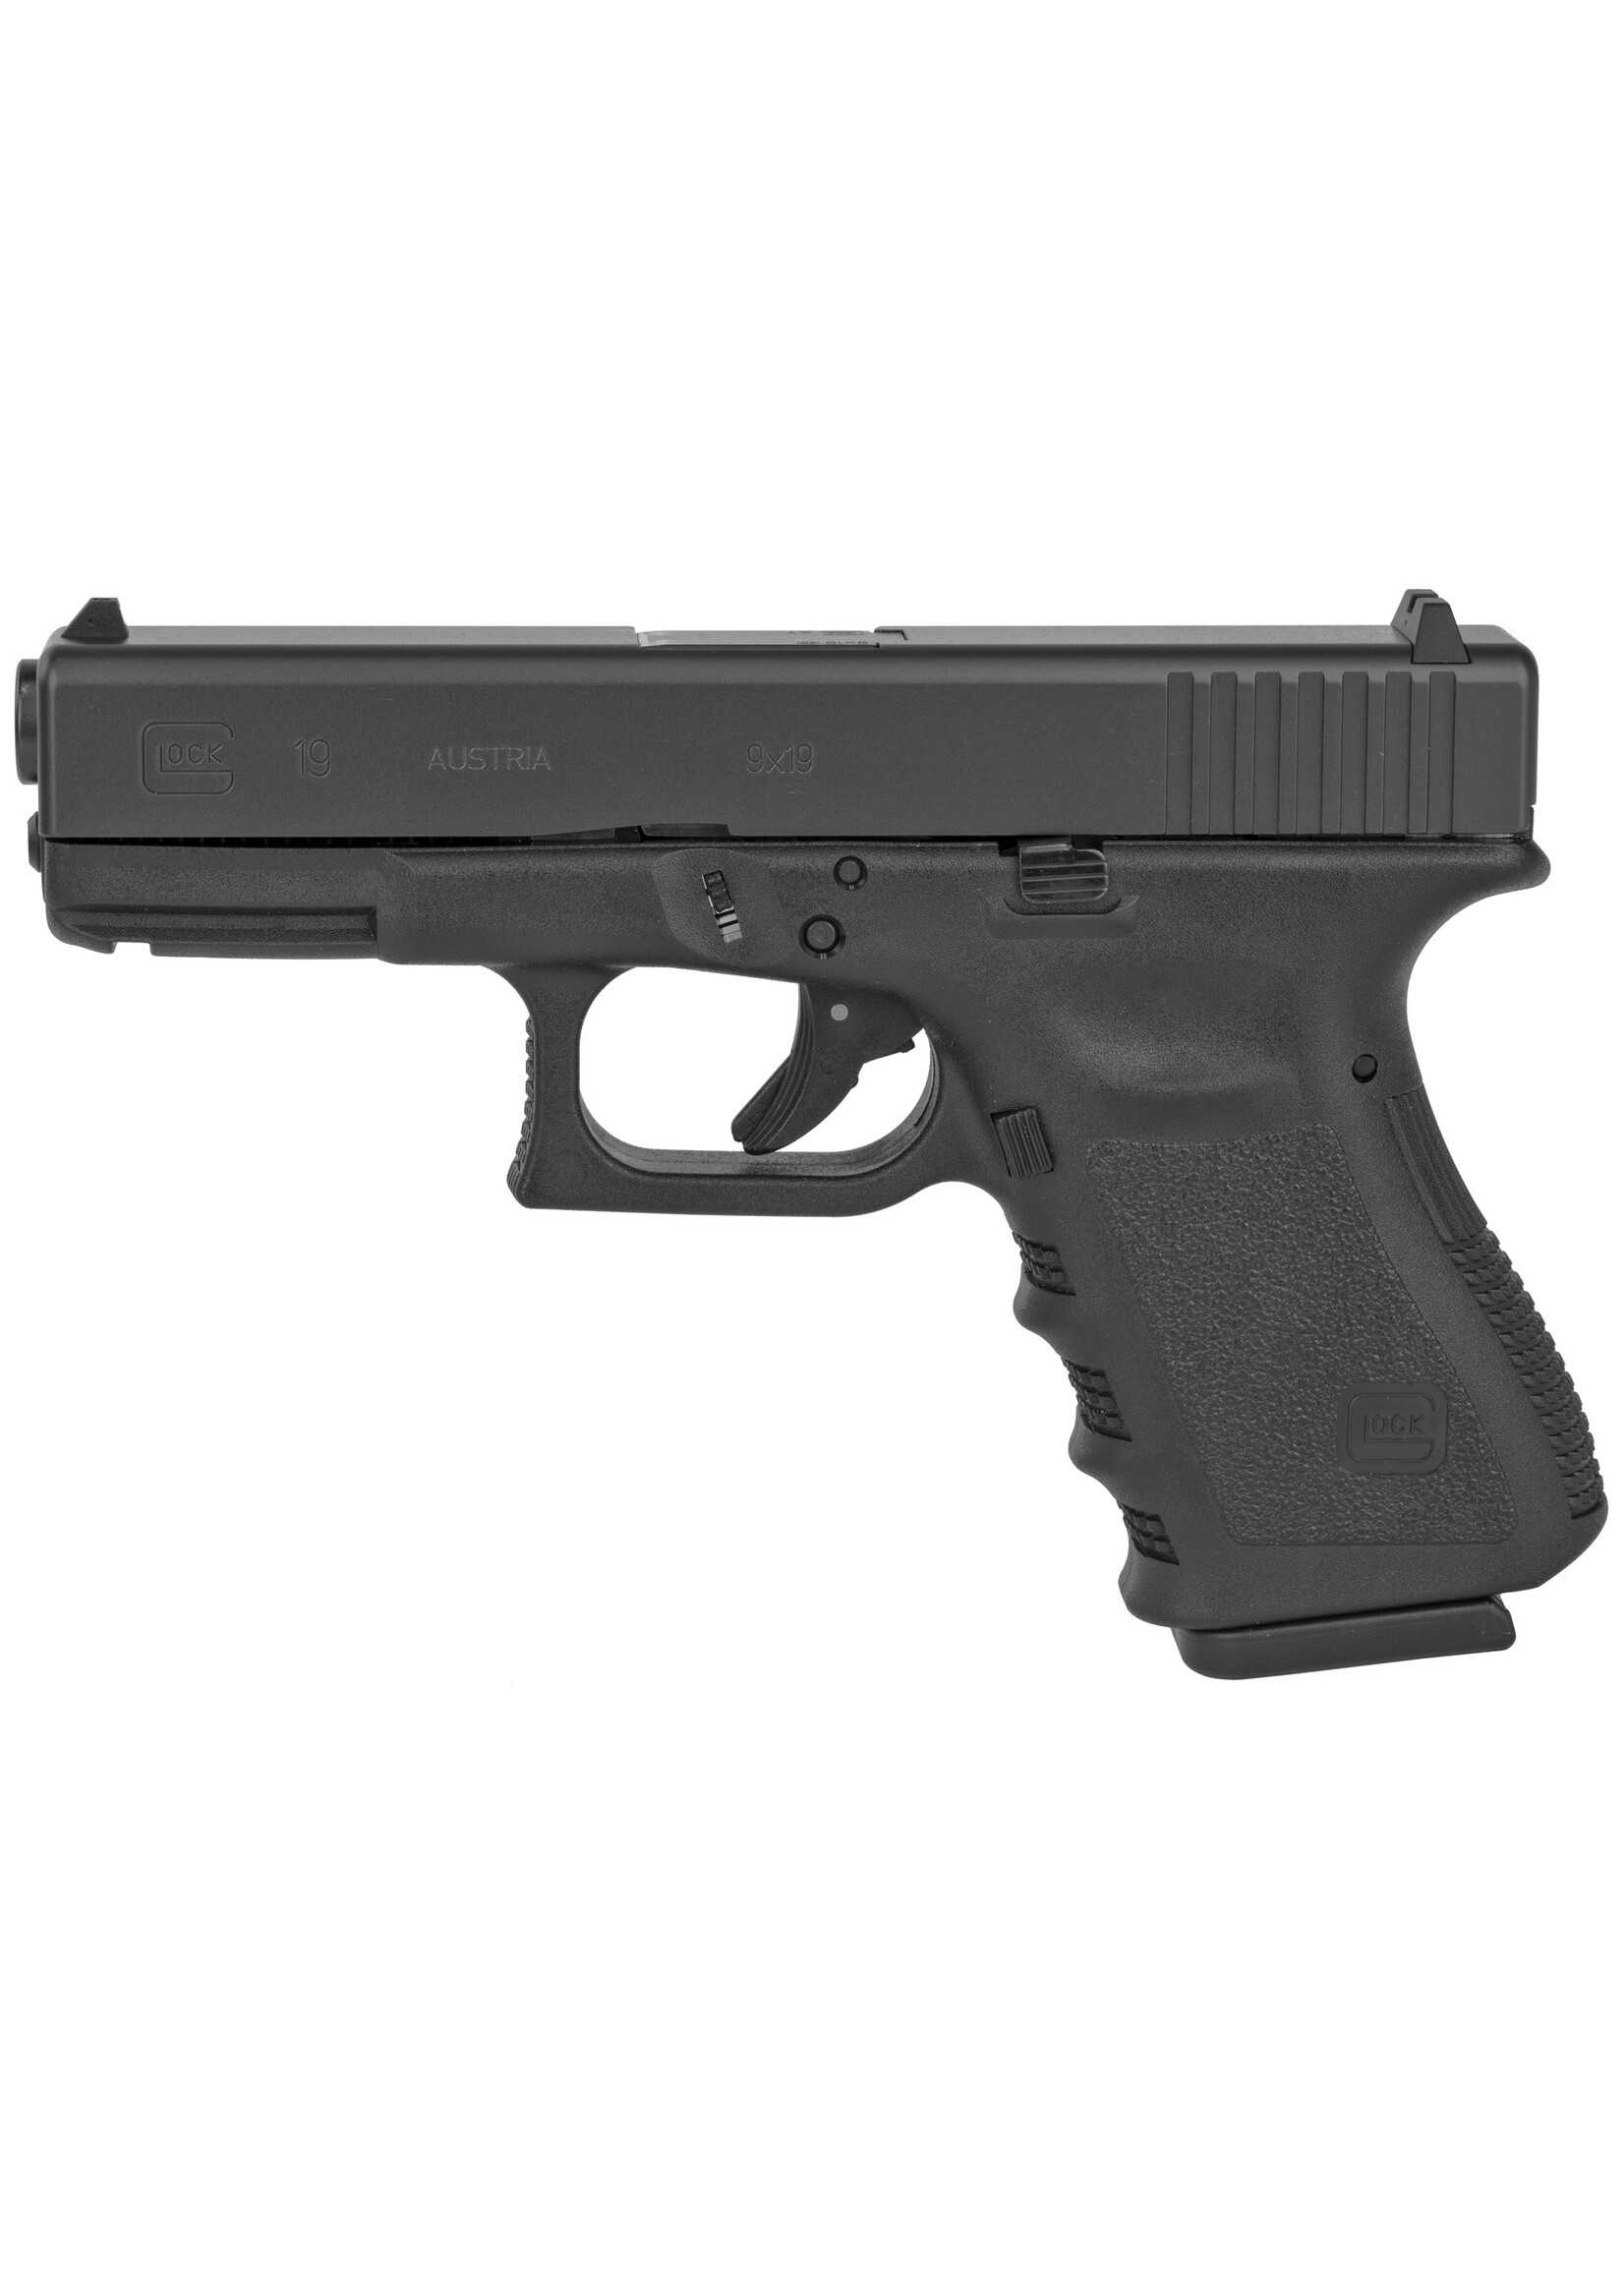 Glock Glock 19 G3 9mm Luger 4.02" 15+1 Black Steel Slide Black Polymer Grip